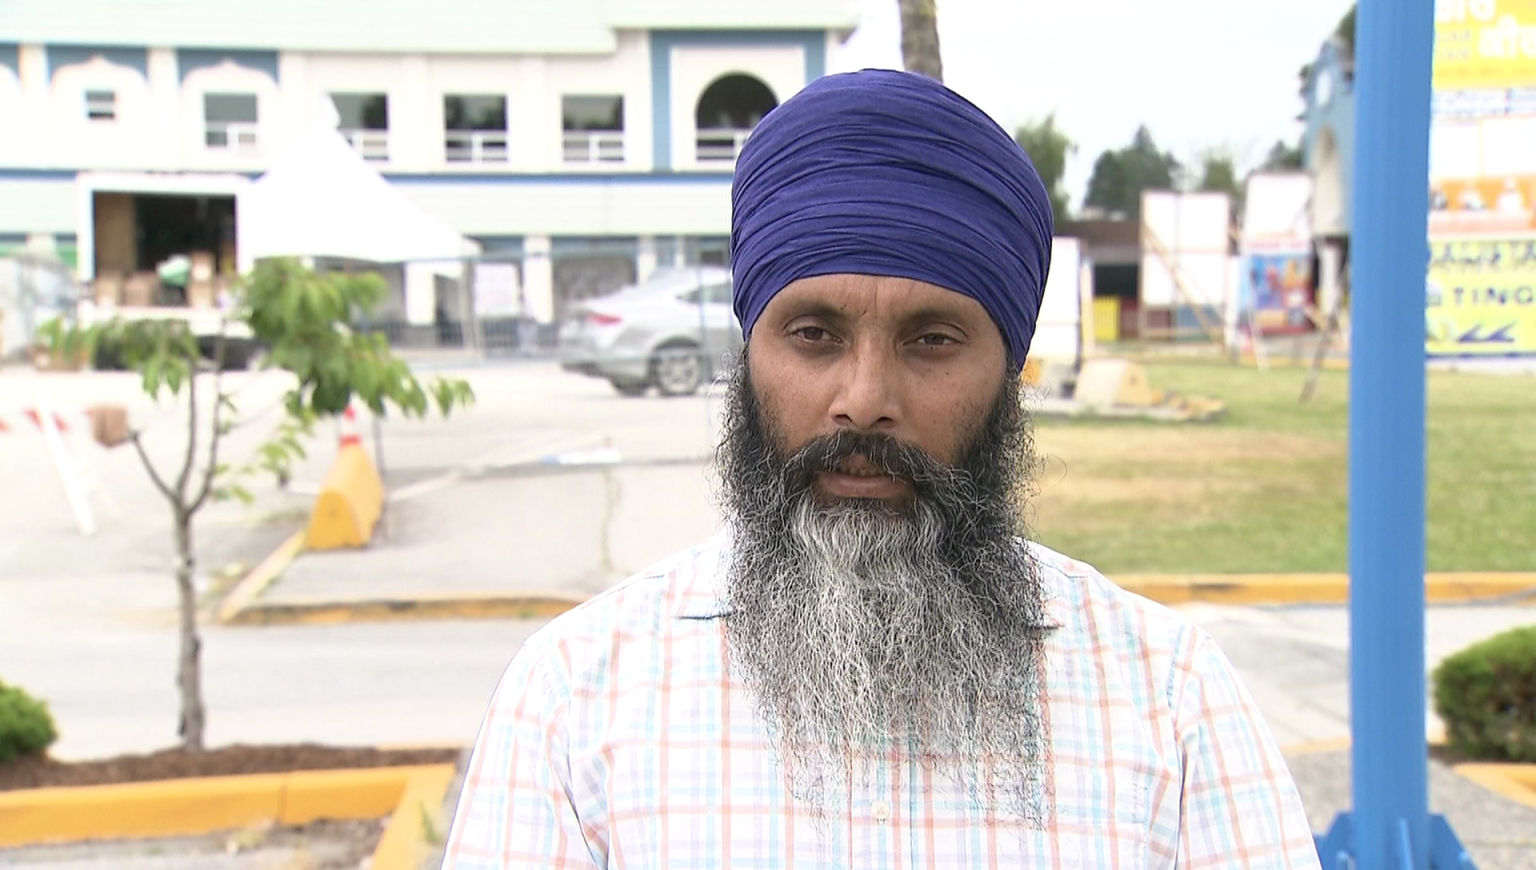 Surrey Sikh gurdwara president shot, killed